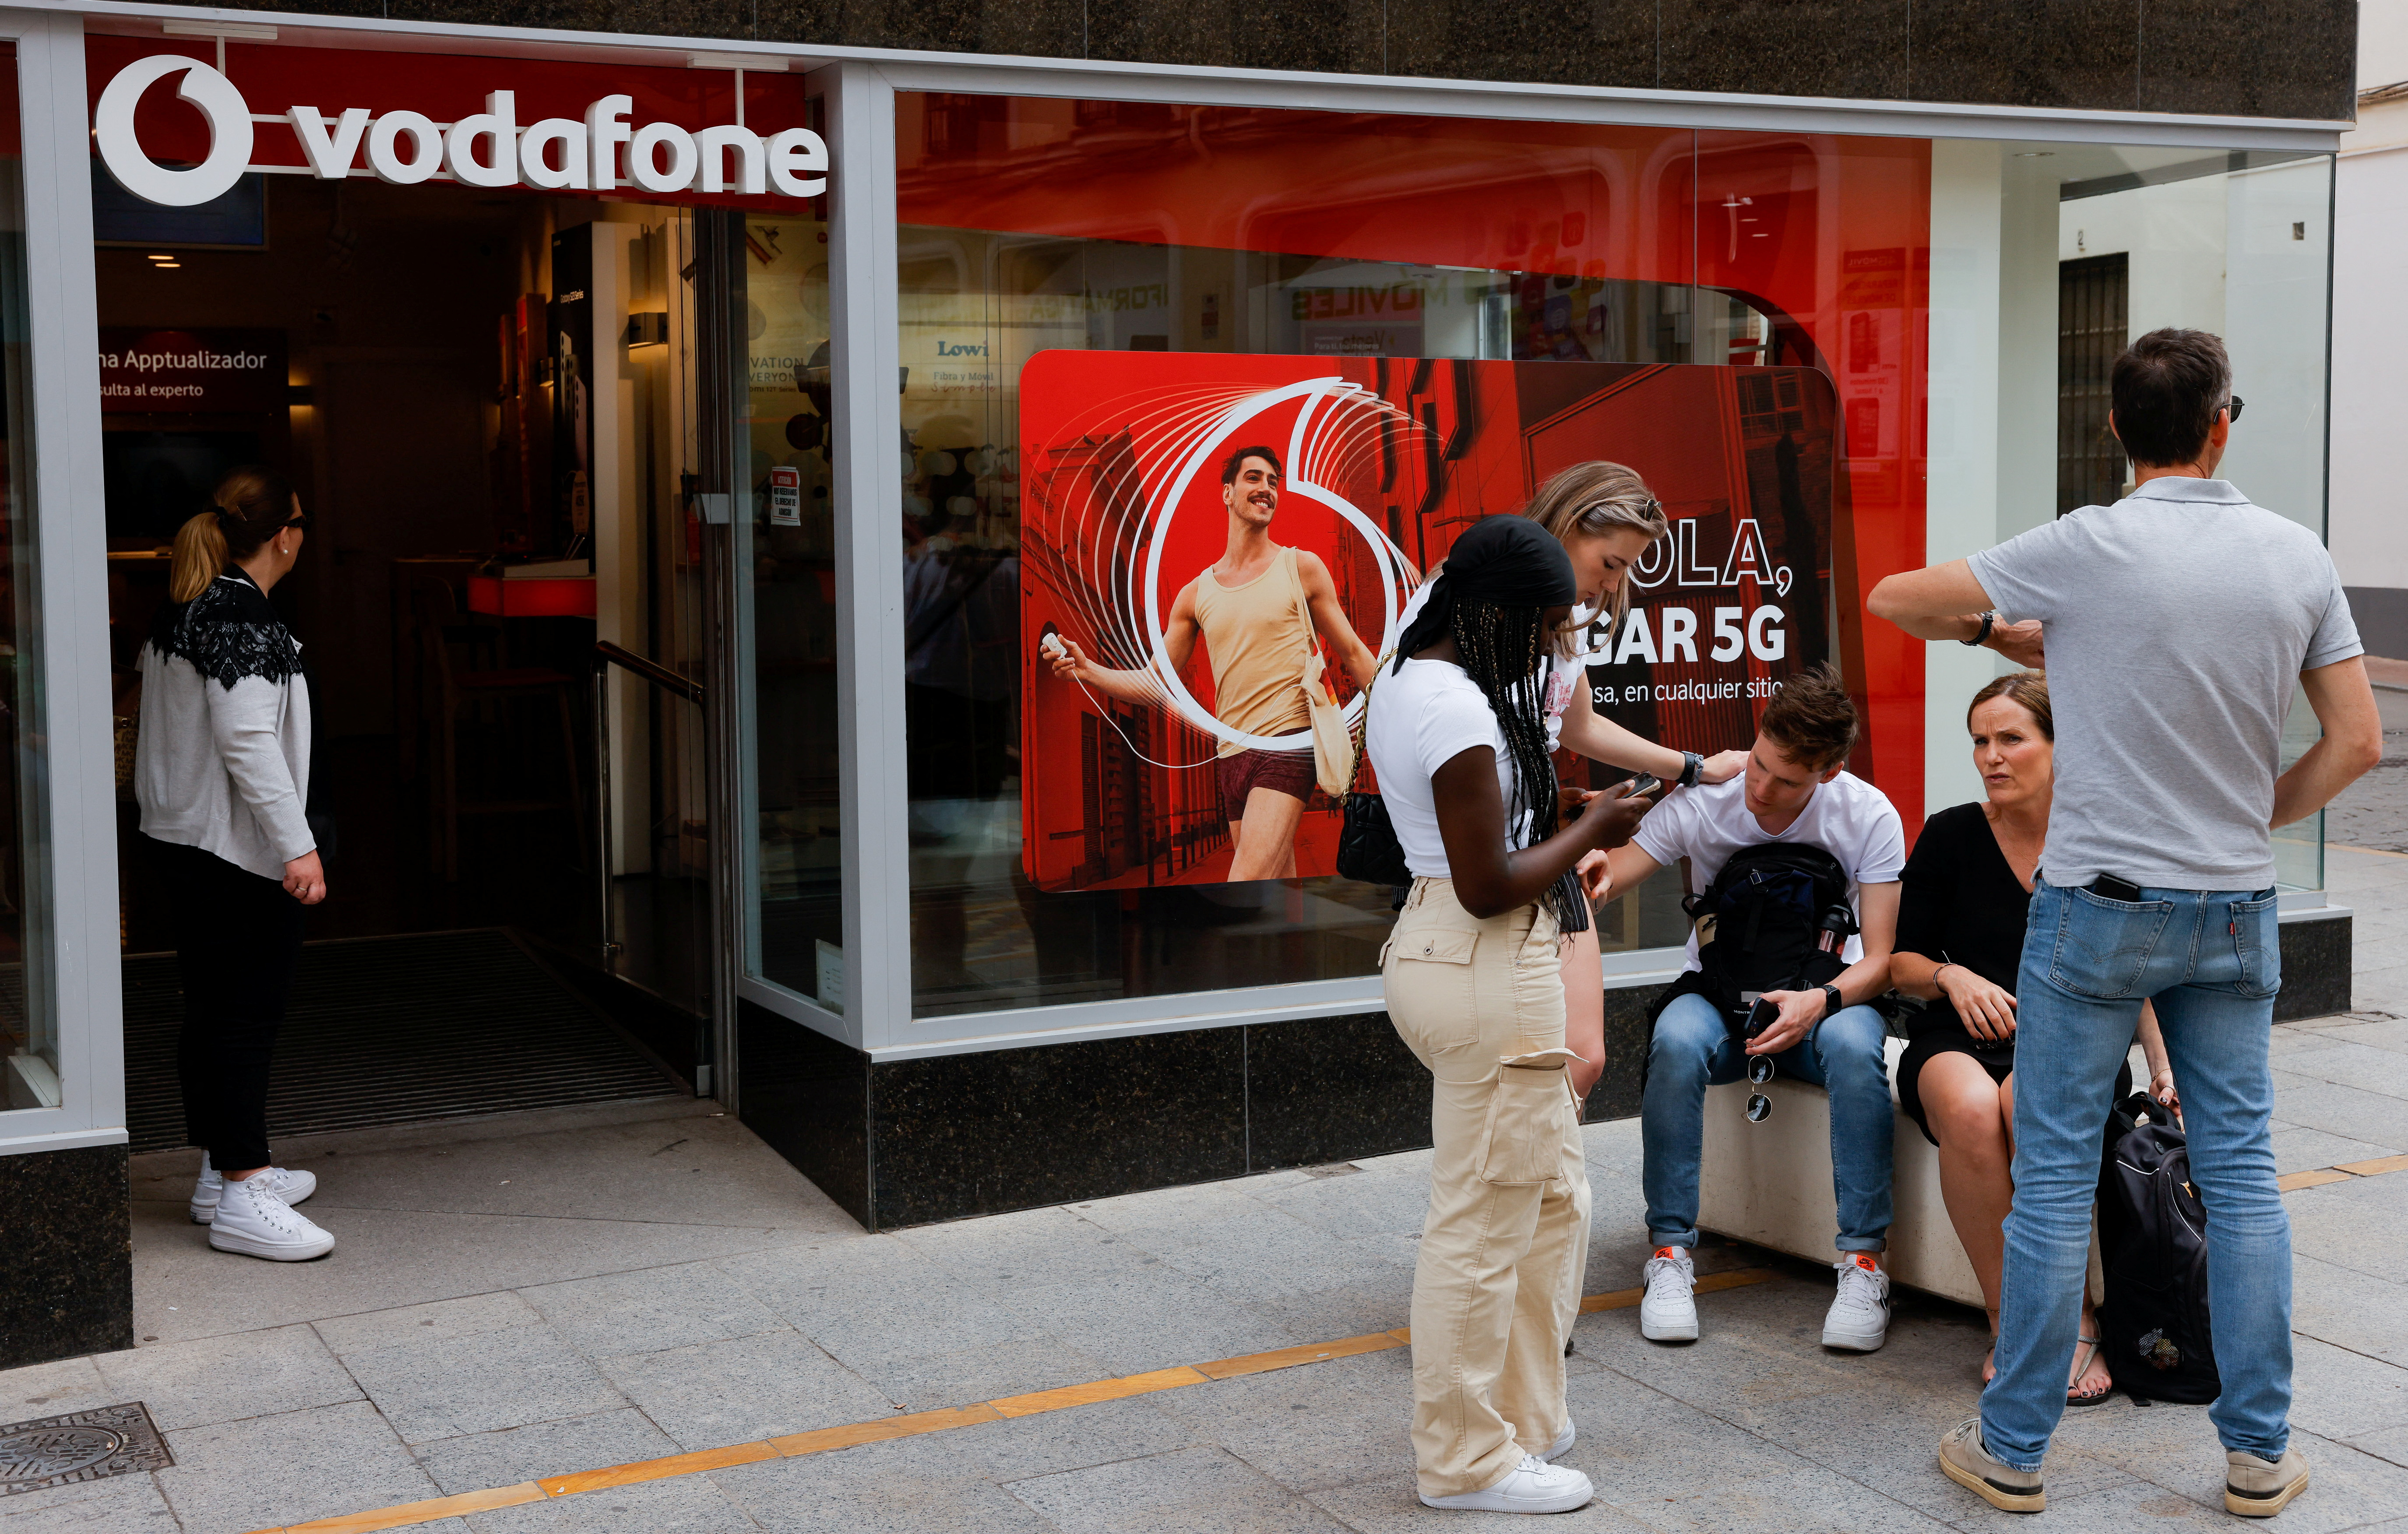 La británica Zigona está en conversaciones para comprar el negocio de Vodafone en España